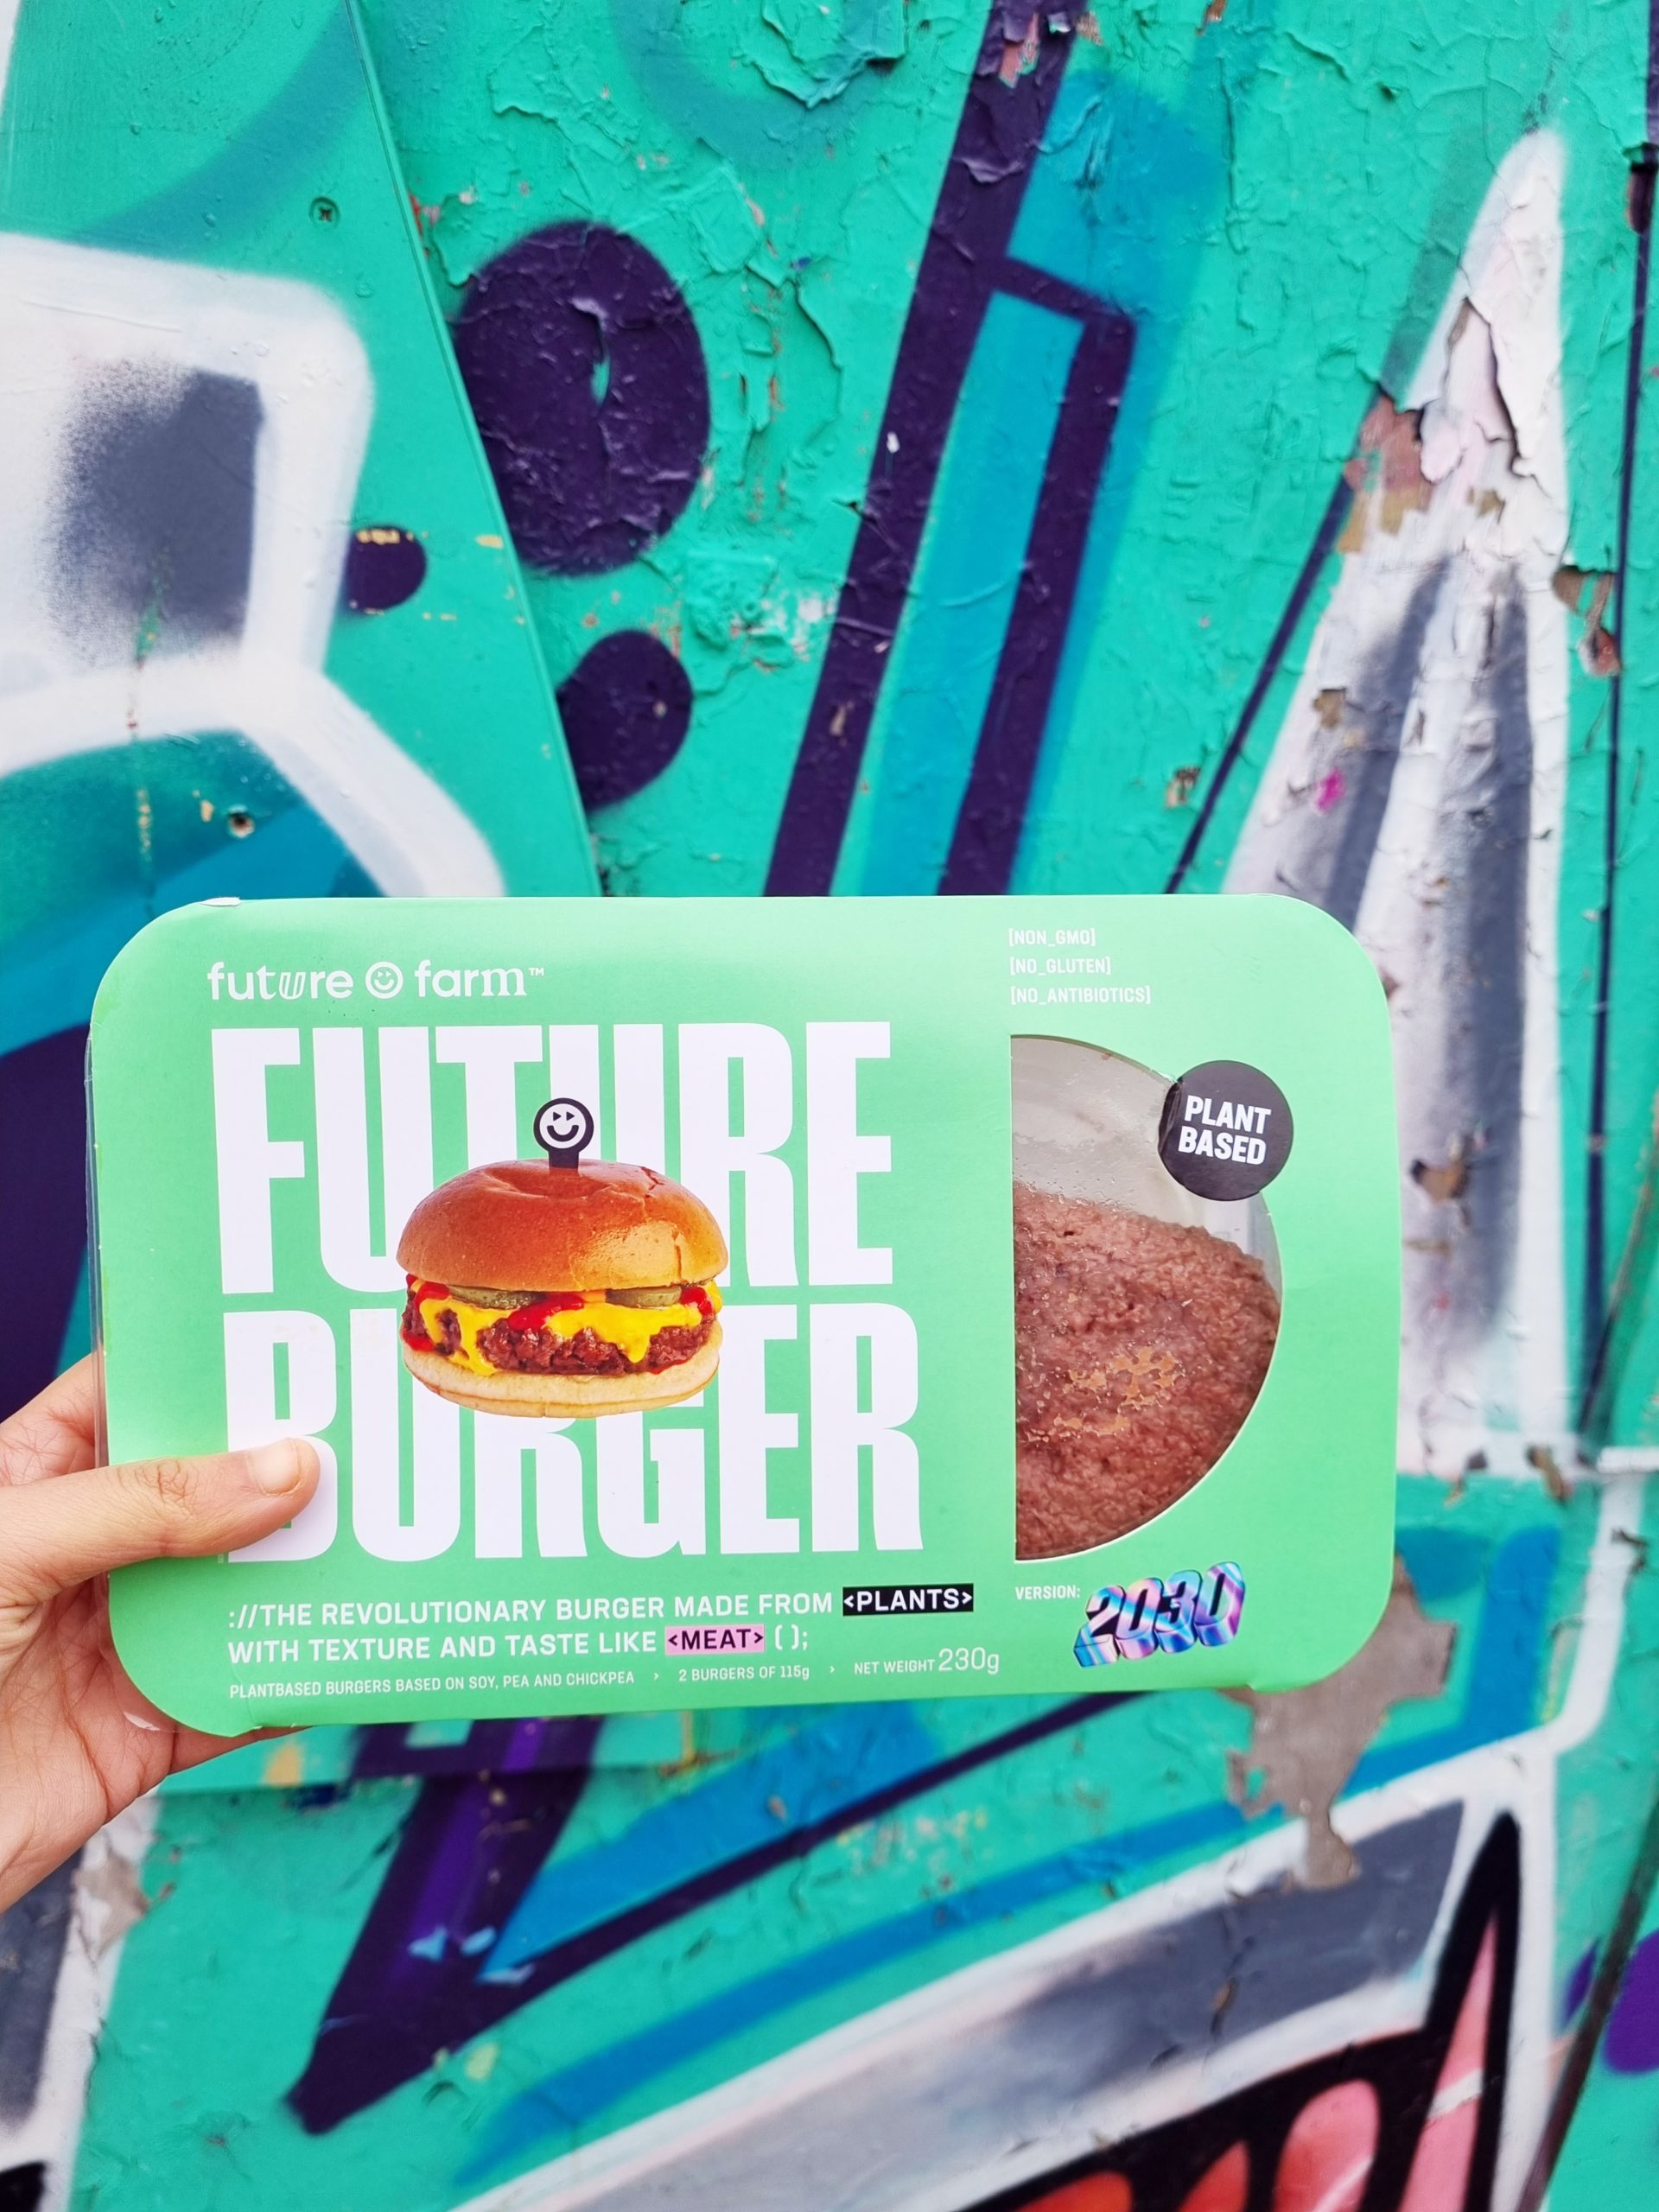 <img src="future.jpg" alt="future farm vegan burger colourful veganuary"/> 